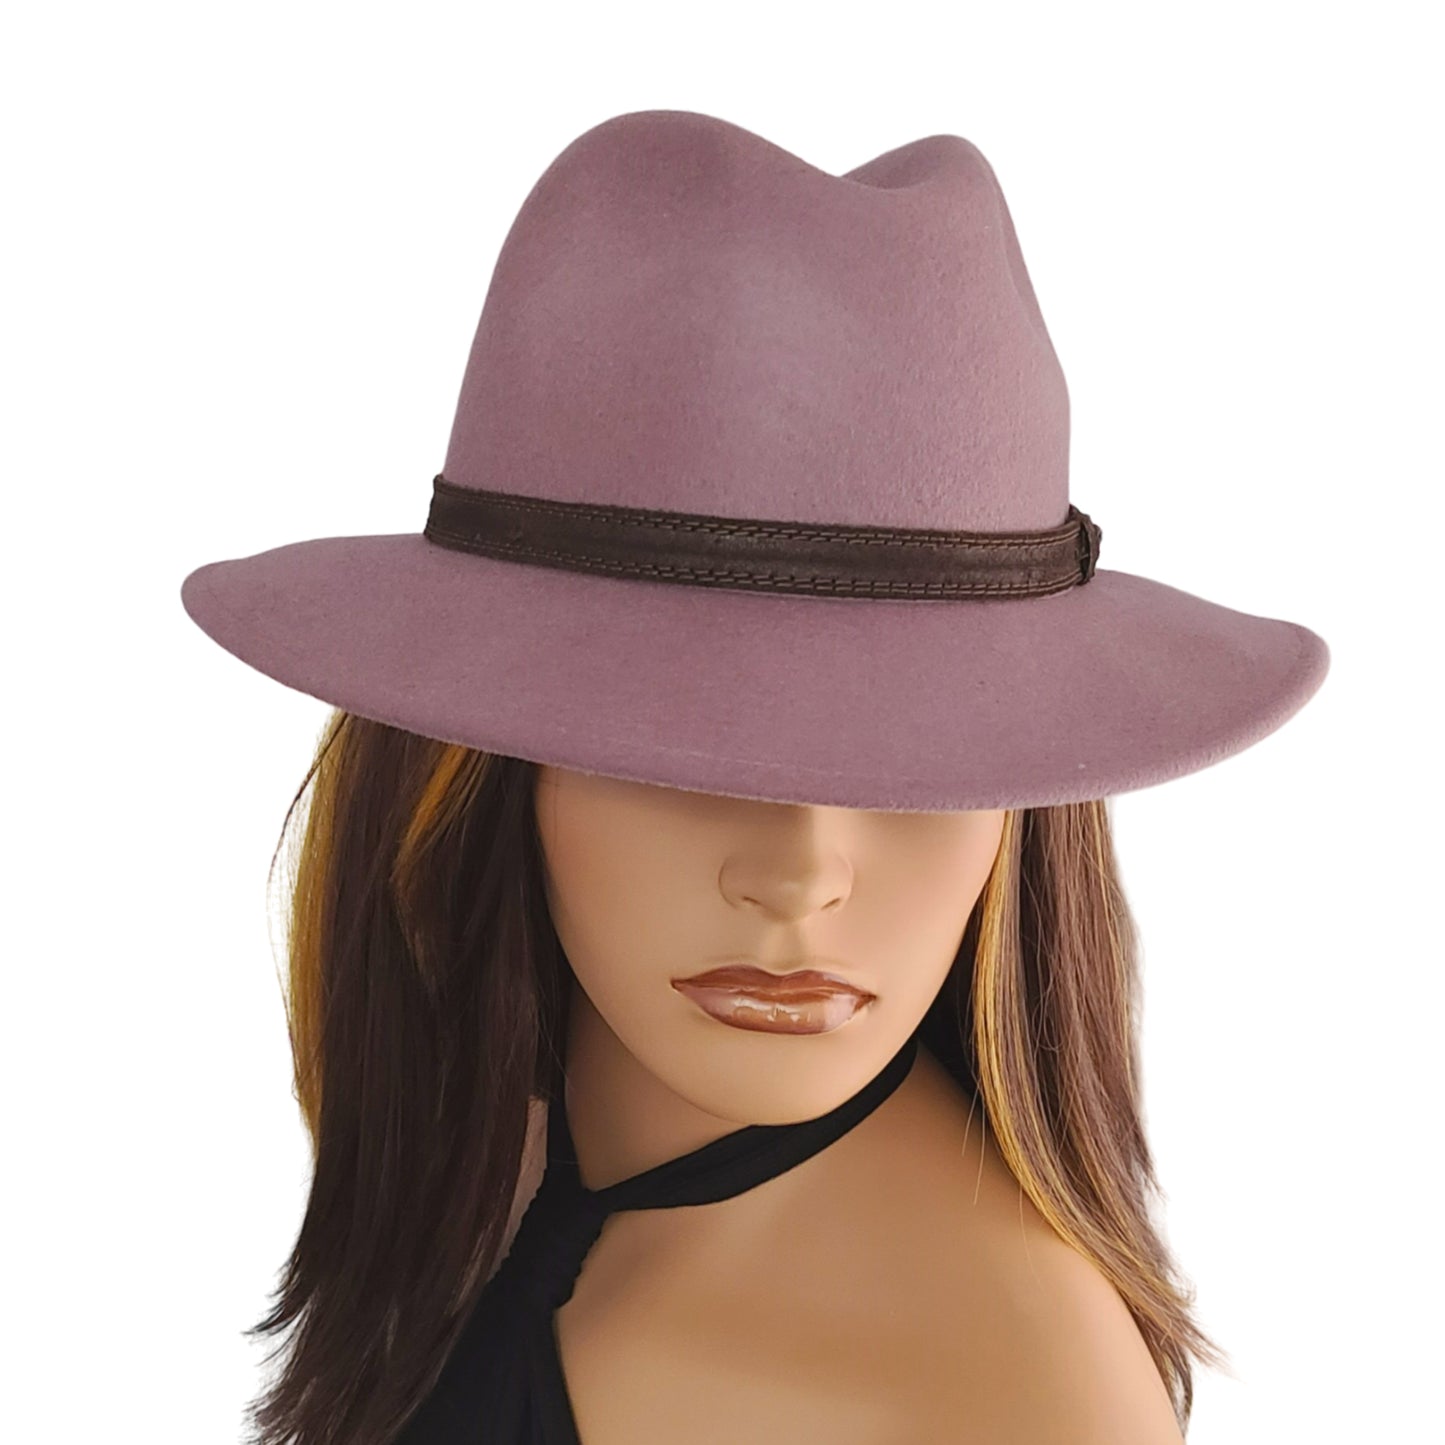 CINTELLI & GALLUZZO Made in Italy Wool Leather Trim Felt Fedora Hat